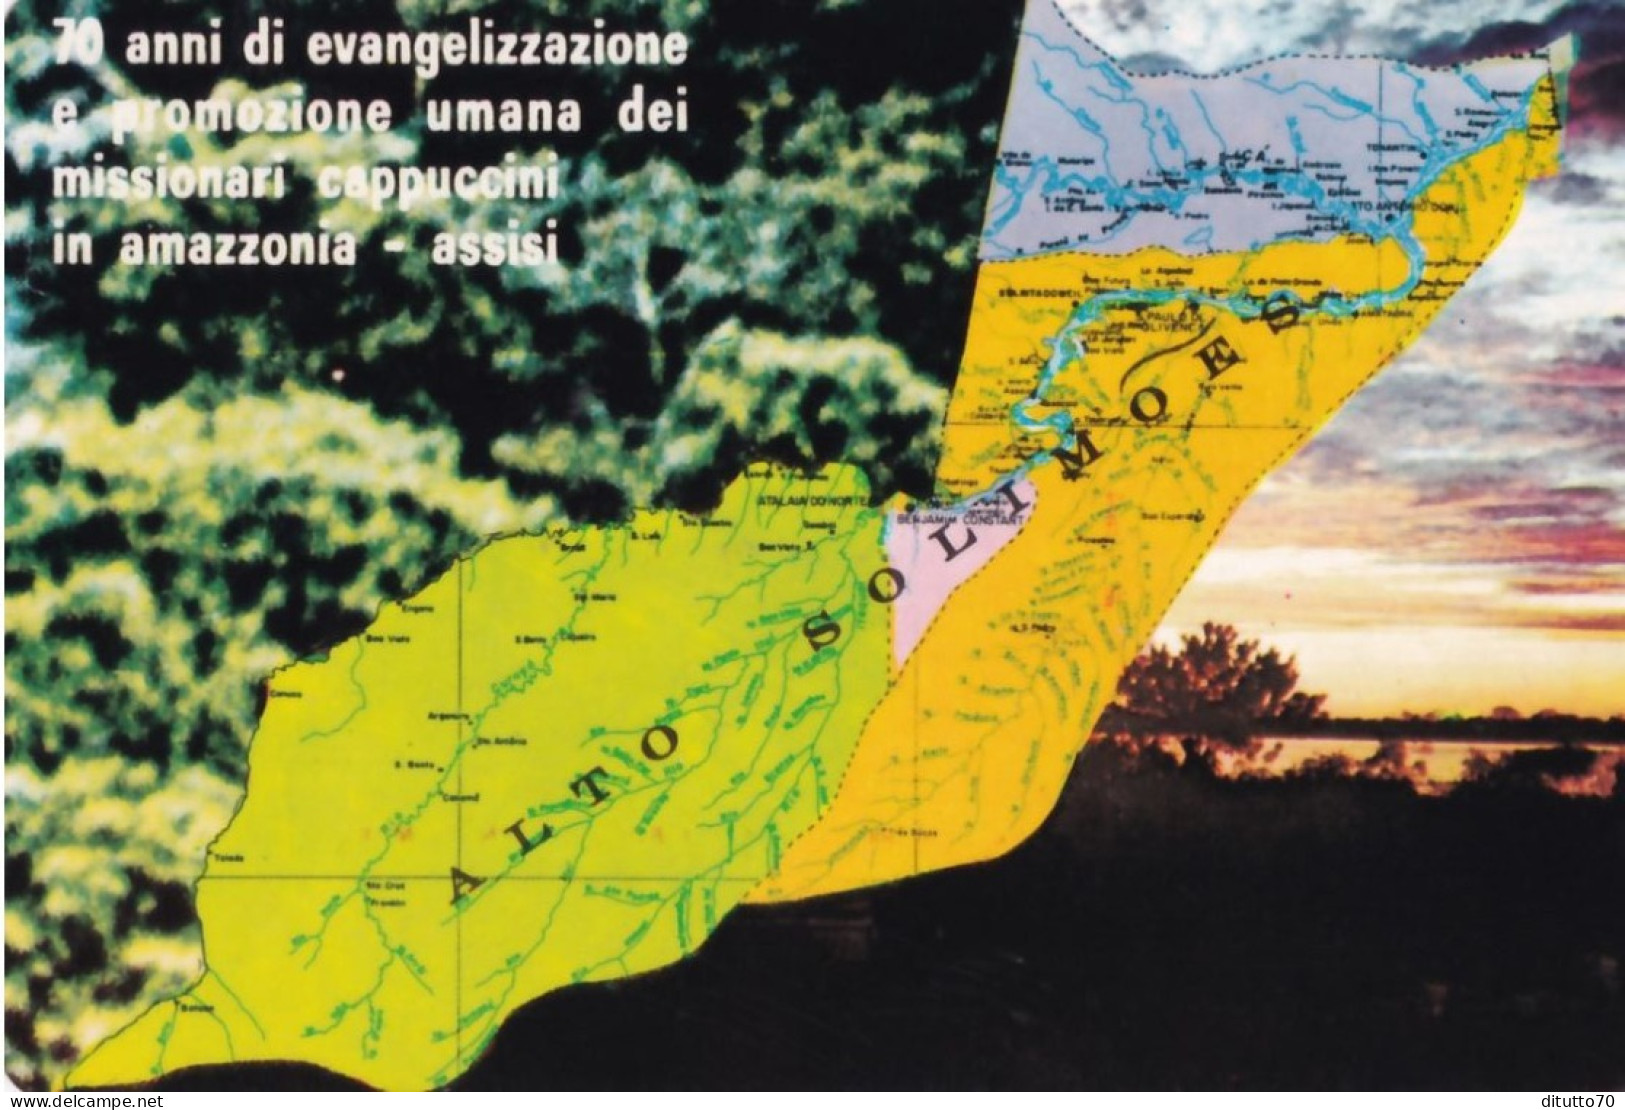 Calendarietto - Missione Cappuccini Amazzonia - Assisi - Anno 1980 - Small : 1971-80